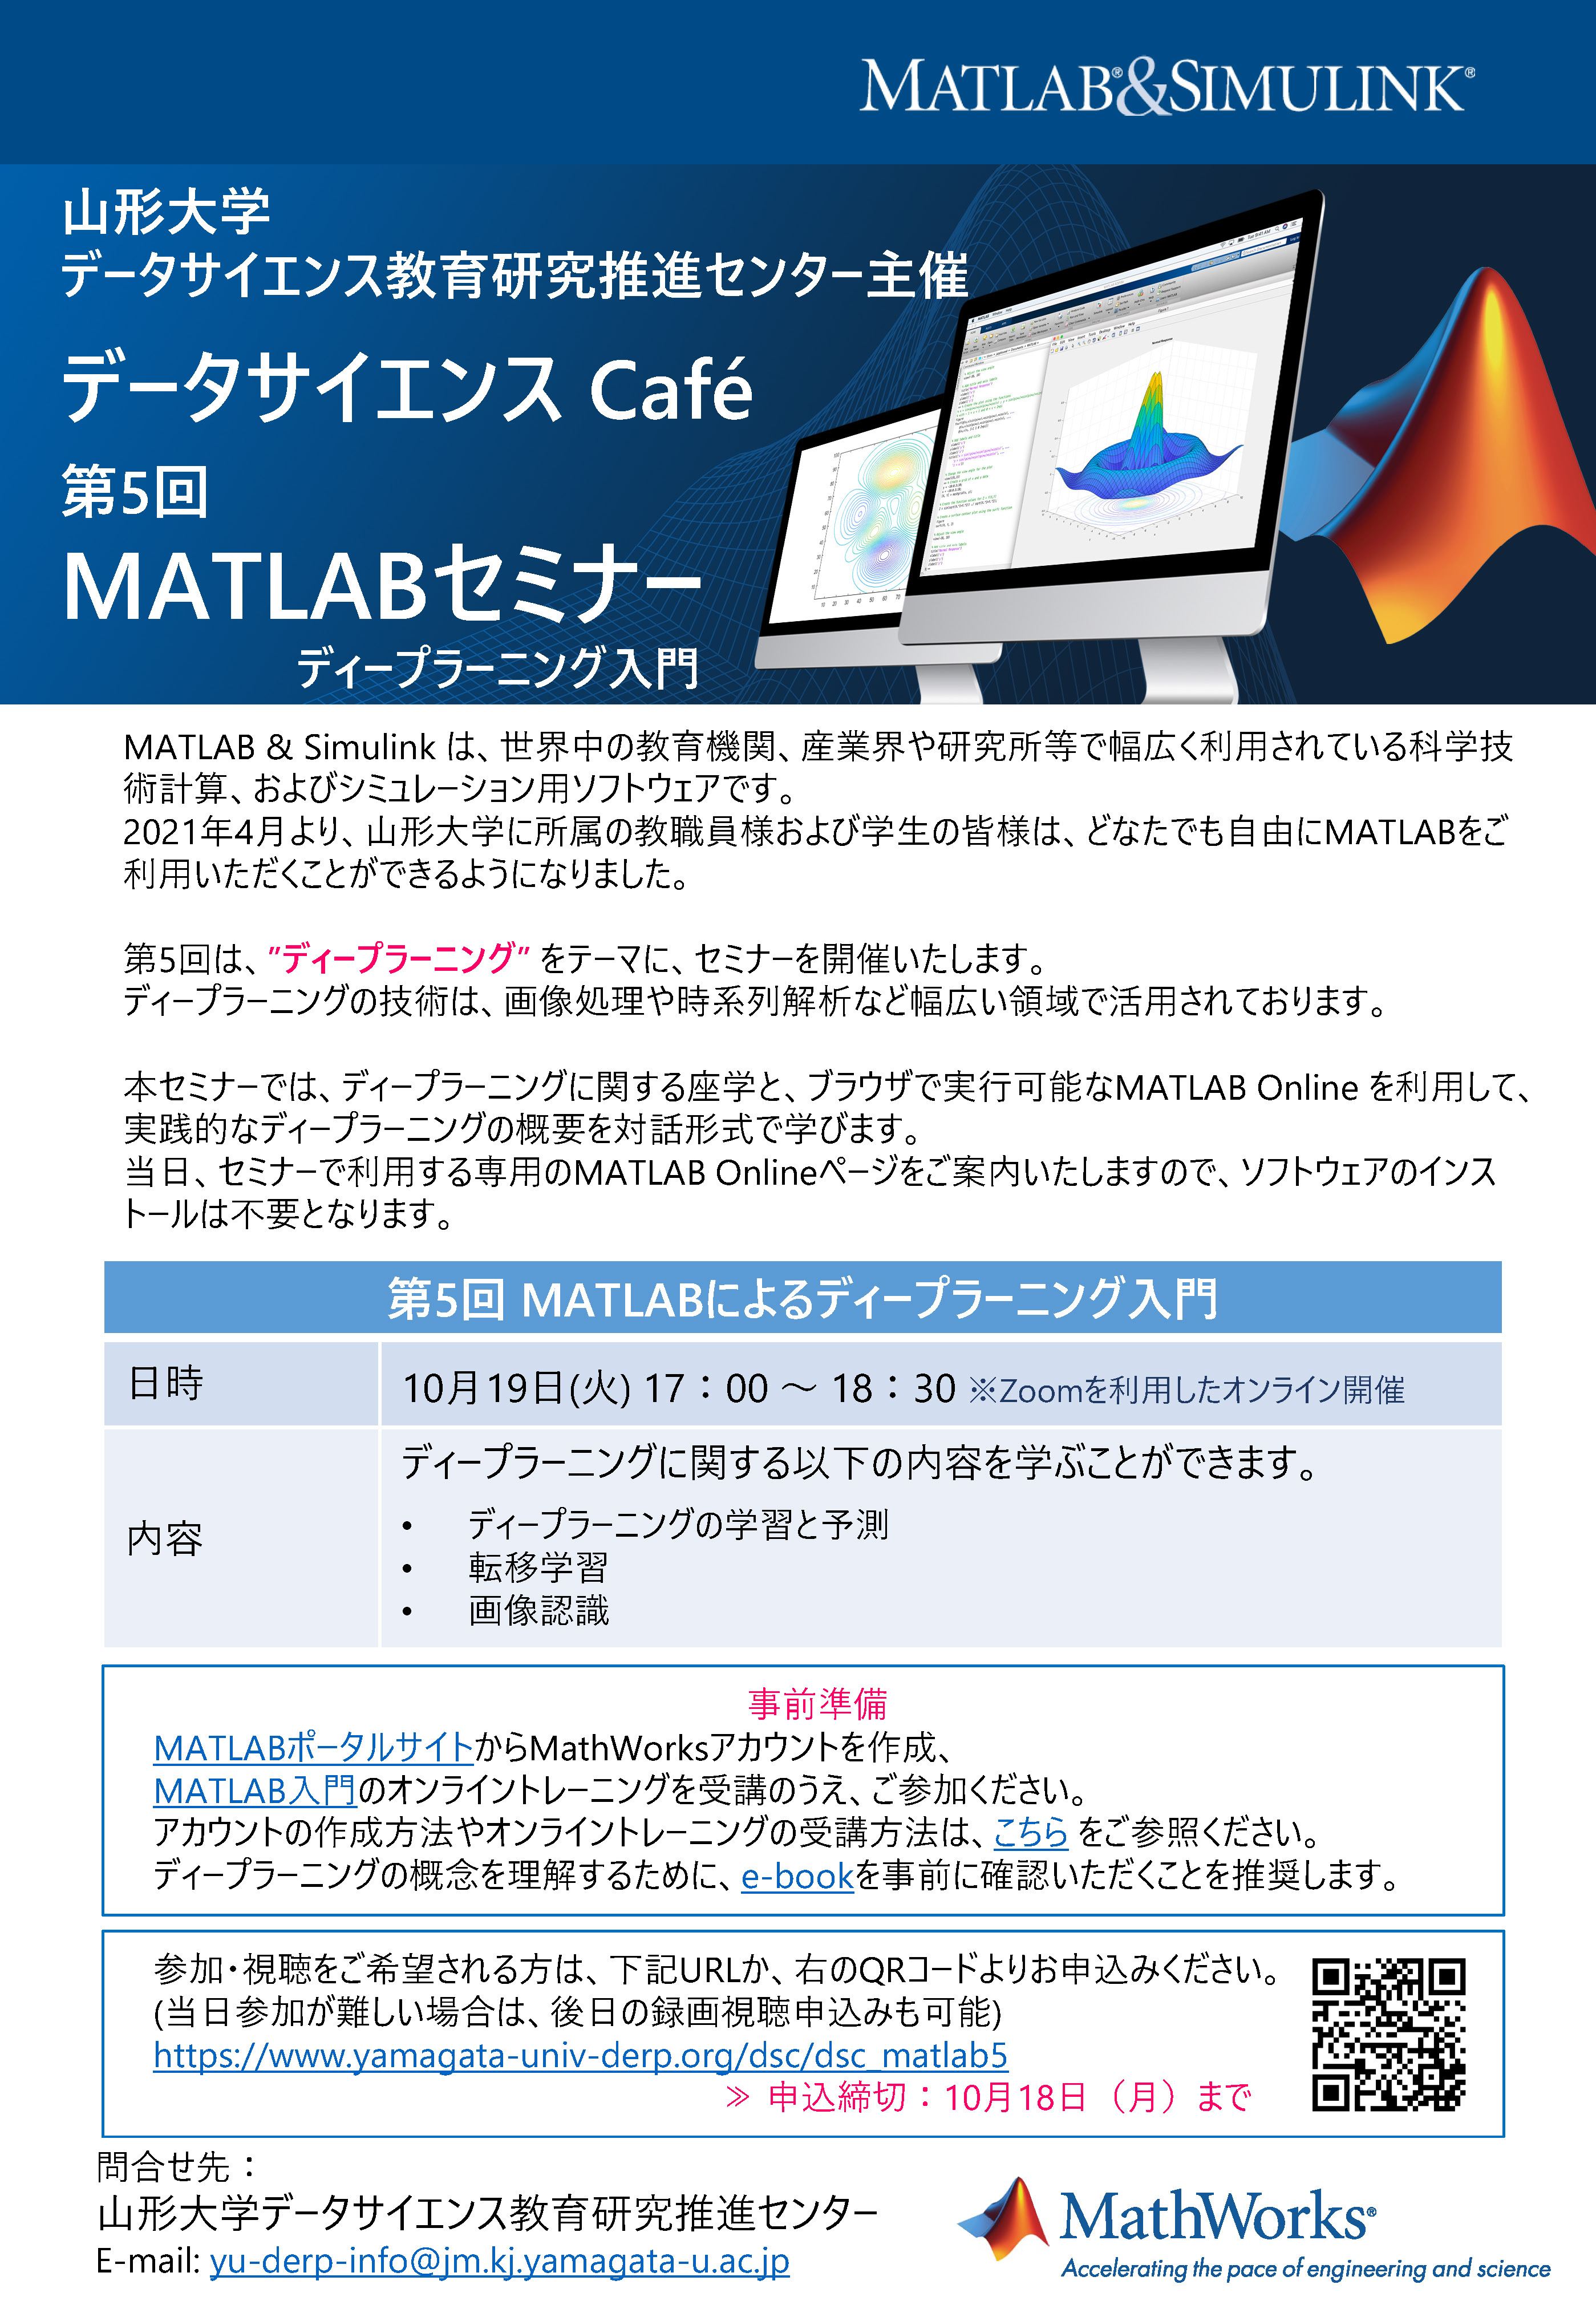 【お知らせ】データサイエンスCafé「MATLABセミナー」第5回